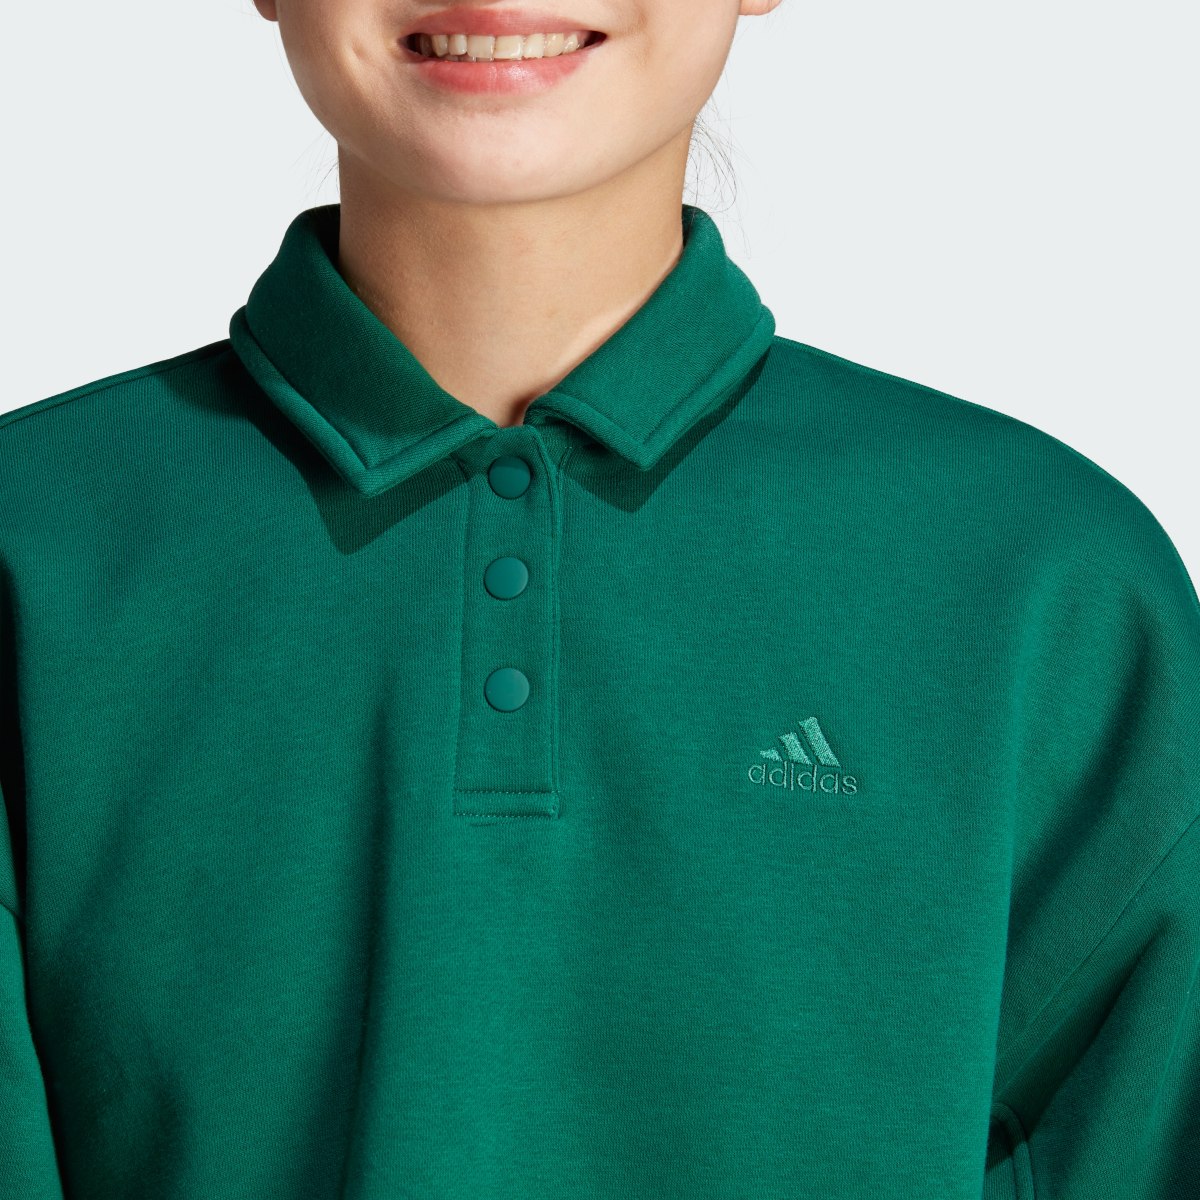 Adidas All SZN Fleece Graphic Polo Sweatshirt. 6